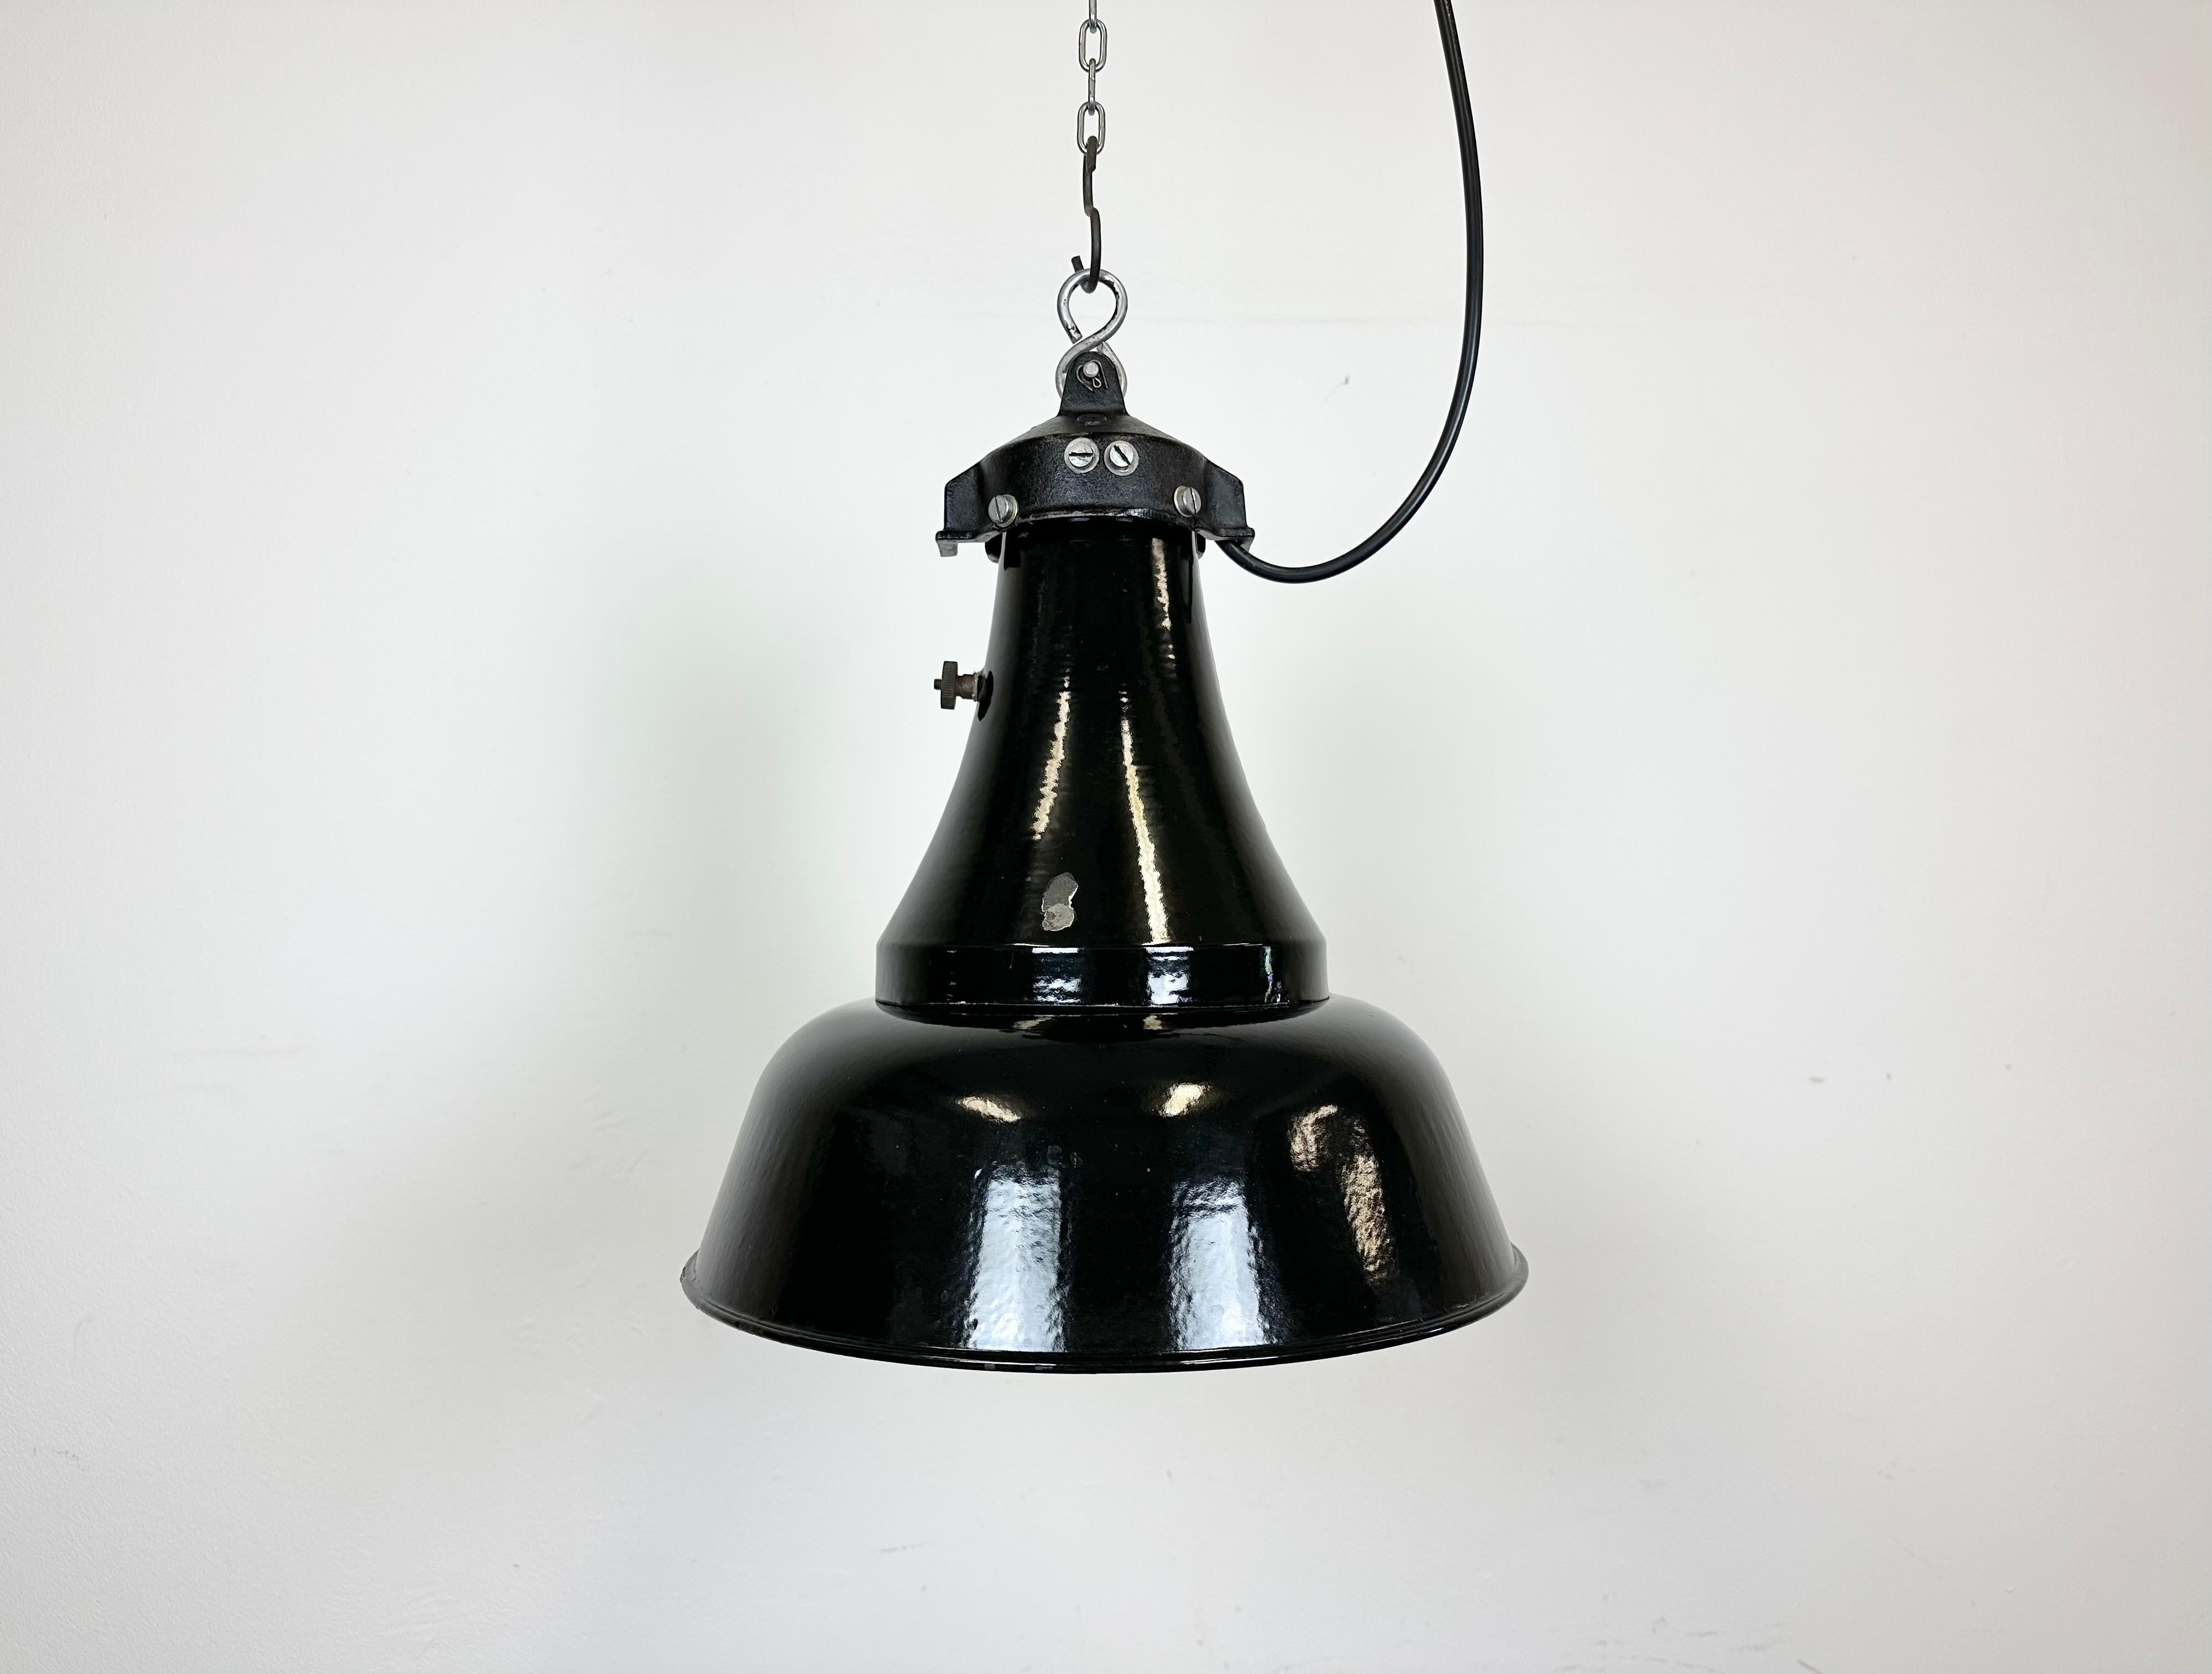 Lampe suspendue vintage industrielle en émail noir dans le style Bauhaus. Utilisé dans les usines de l'ancienne Tchécoslovaquie dans les années 1930. Intérieur en émail blanc. Dessus en fonte.La douille convient aux ampoules E27/ E26.Fil neuf.